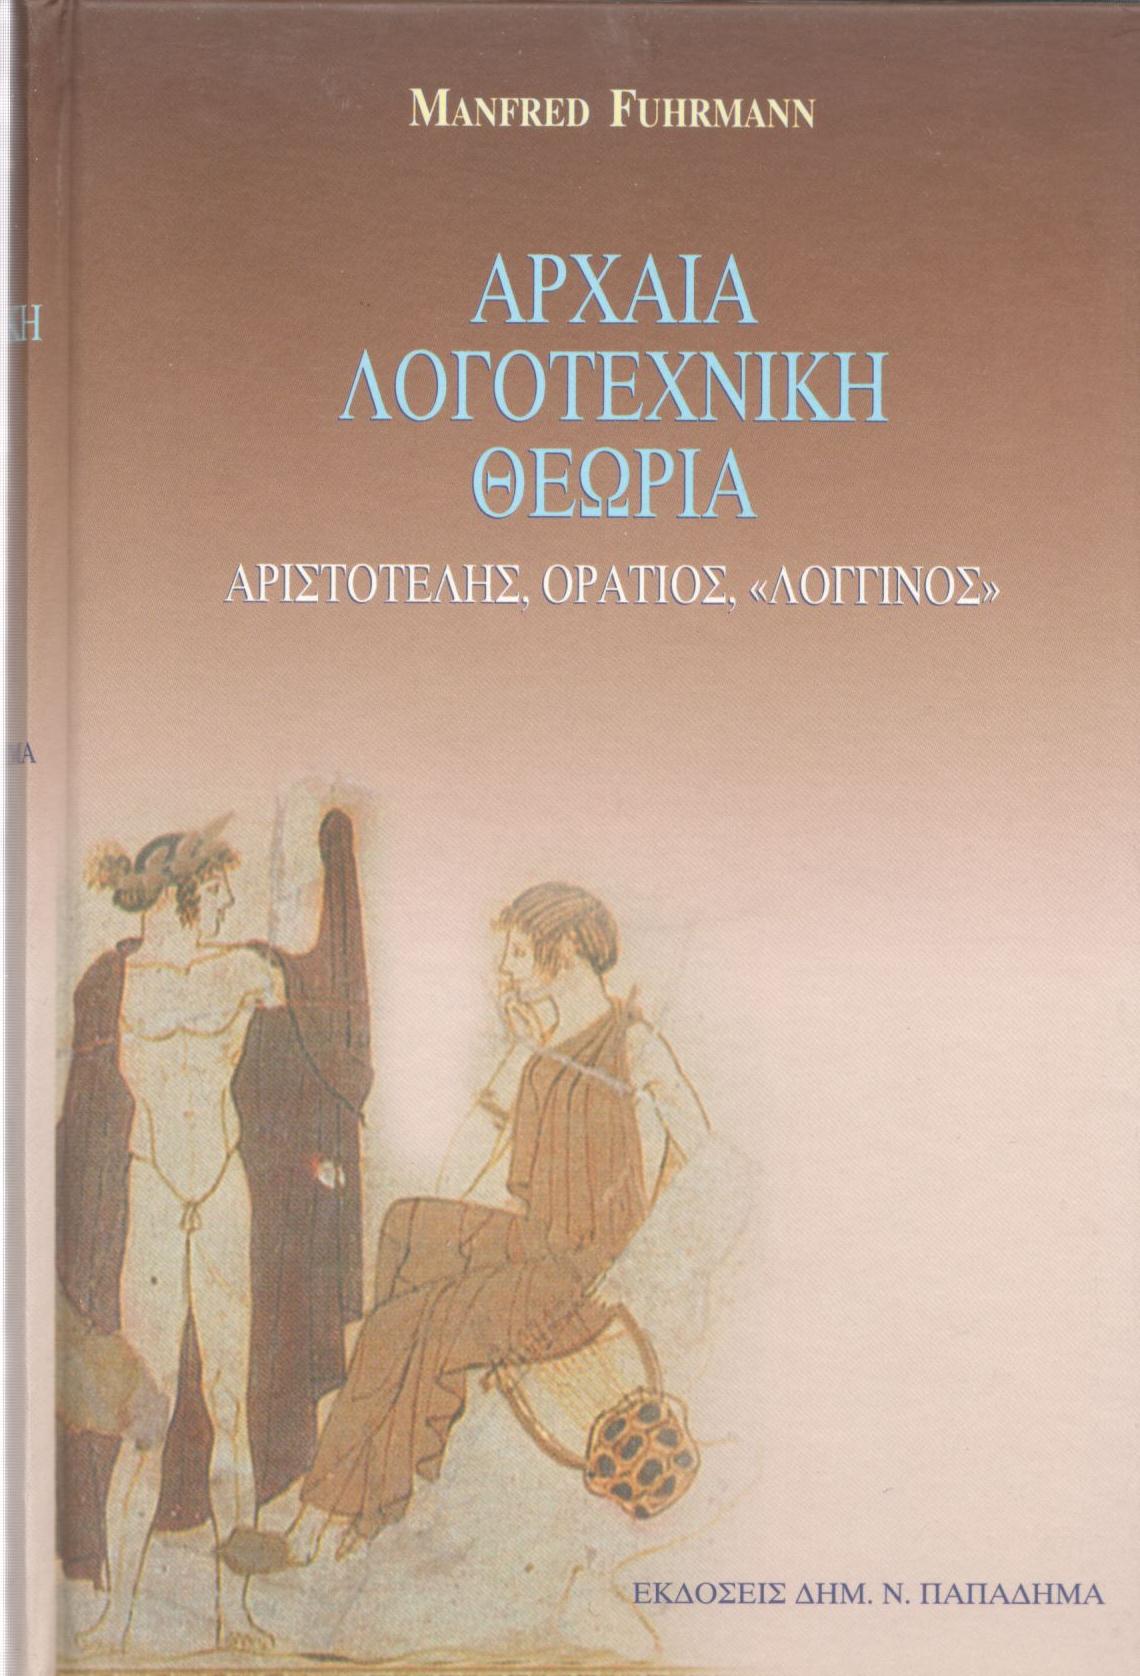 Αρχαία λογοτεχνική θεωρία Αριστοτέλης-Οράτιος-Λογγίνος